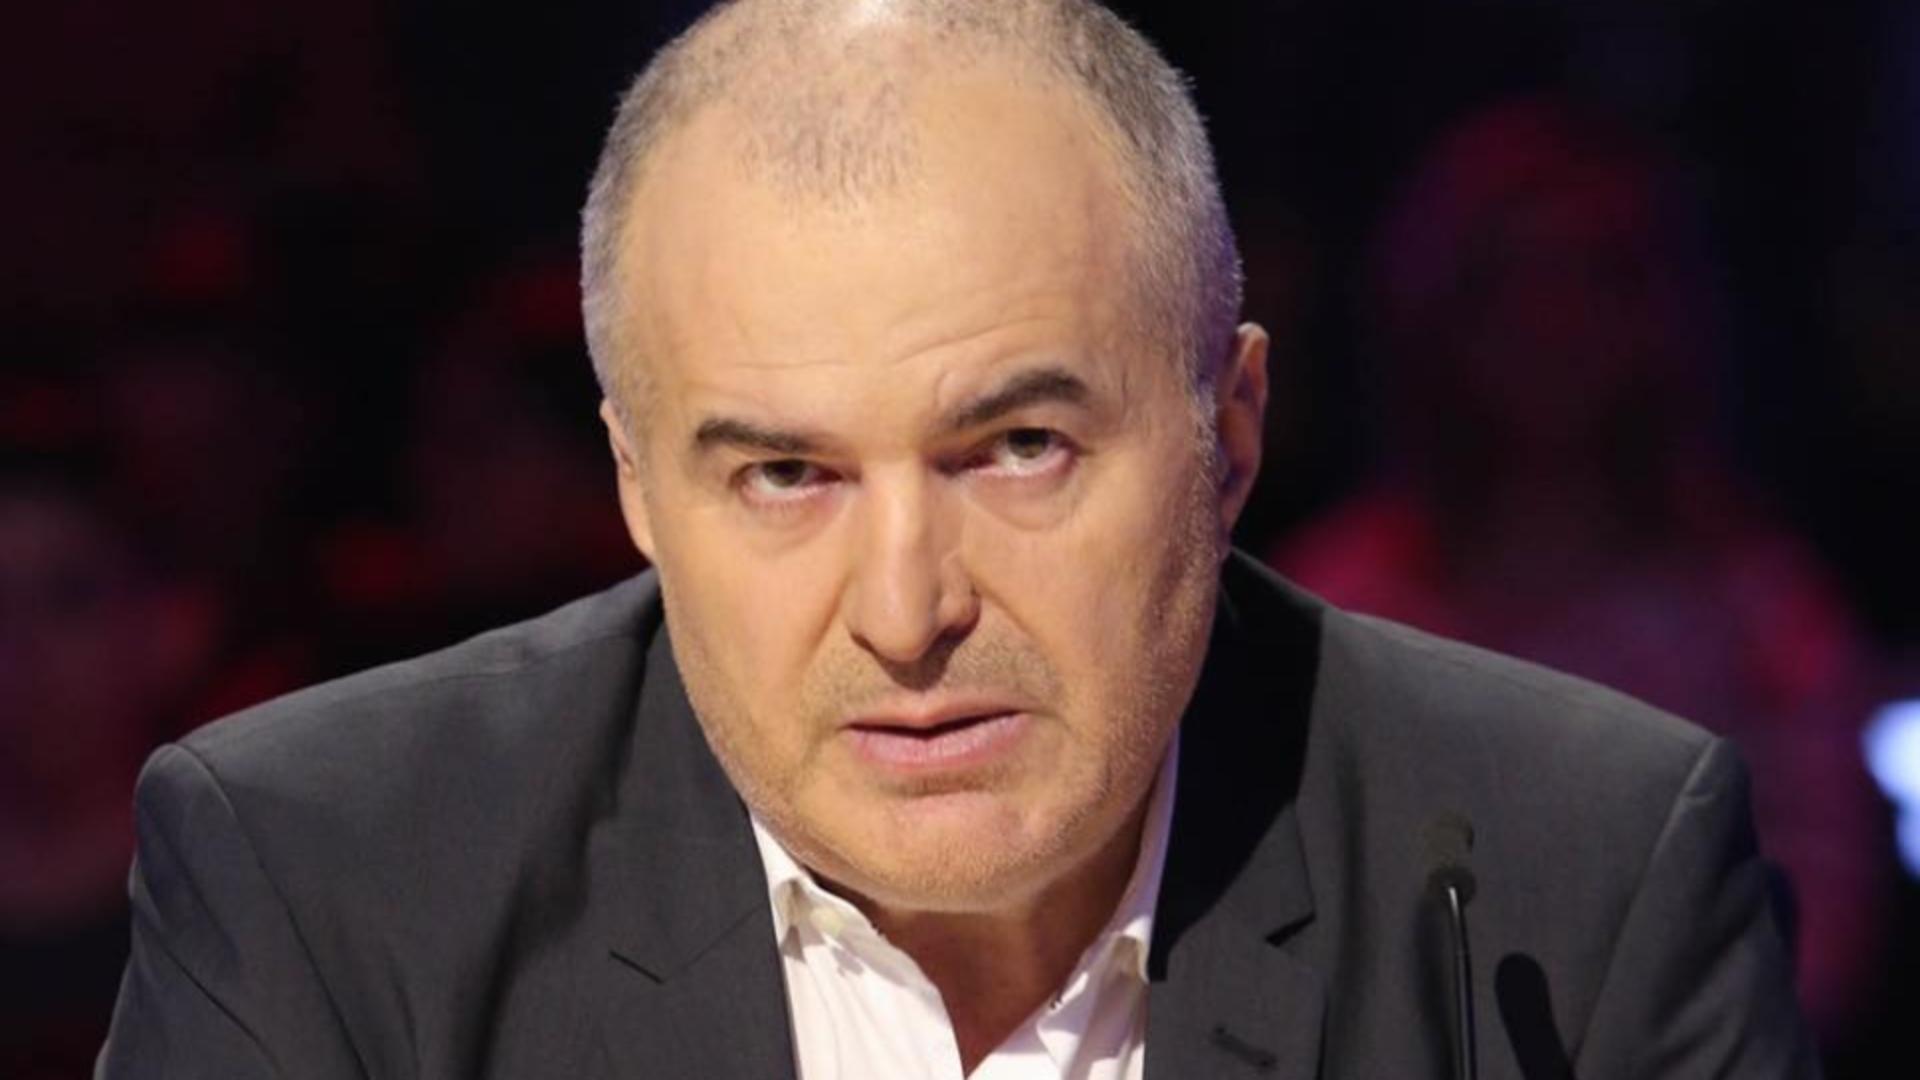 Adevărul ascuns: Florin Călinescu dezvăluie motivul misterios al plecării sale de la PRO TV